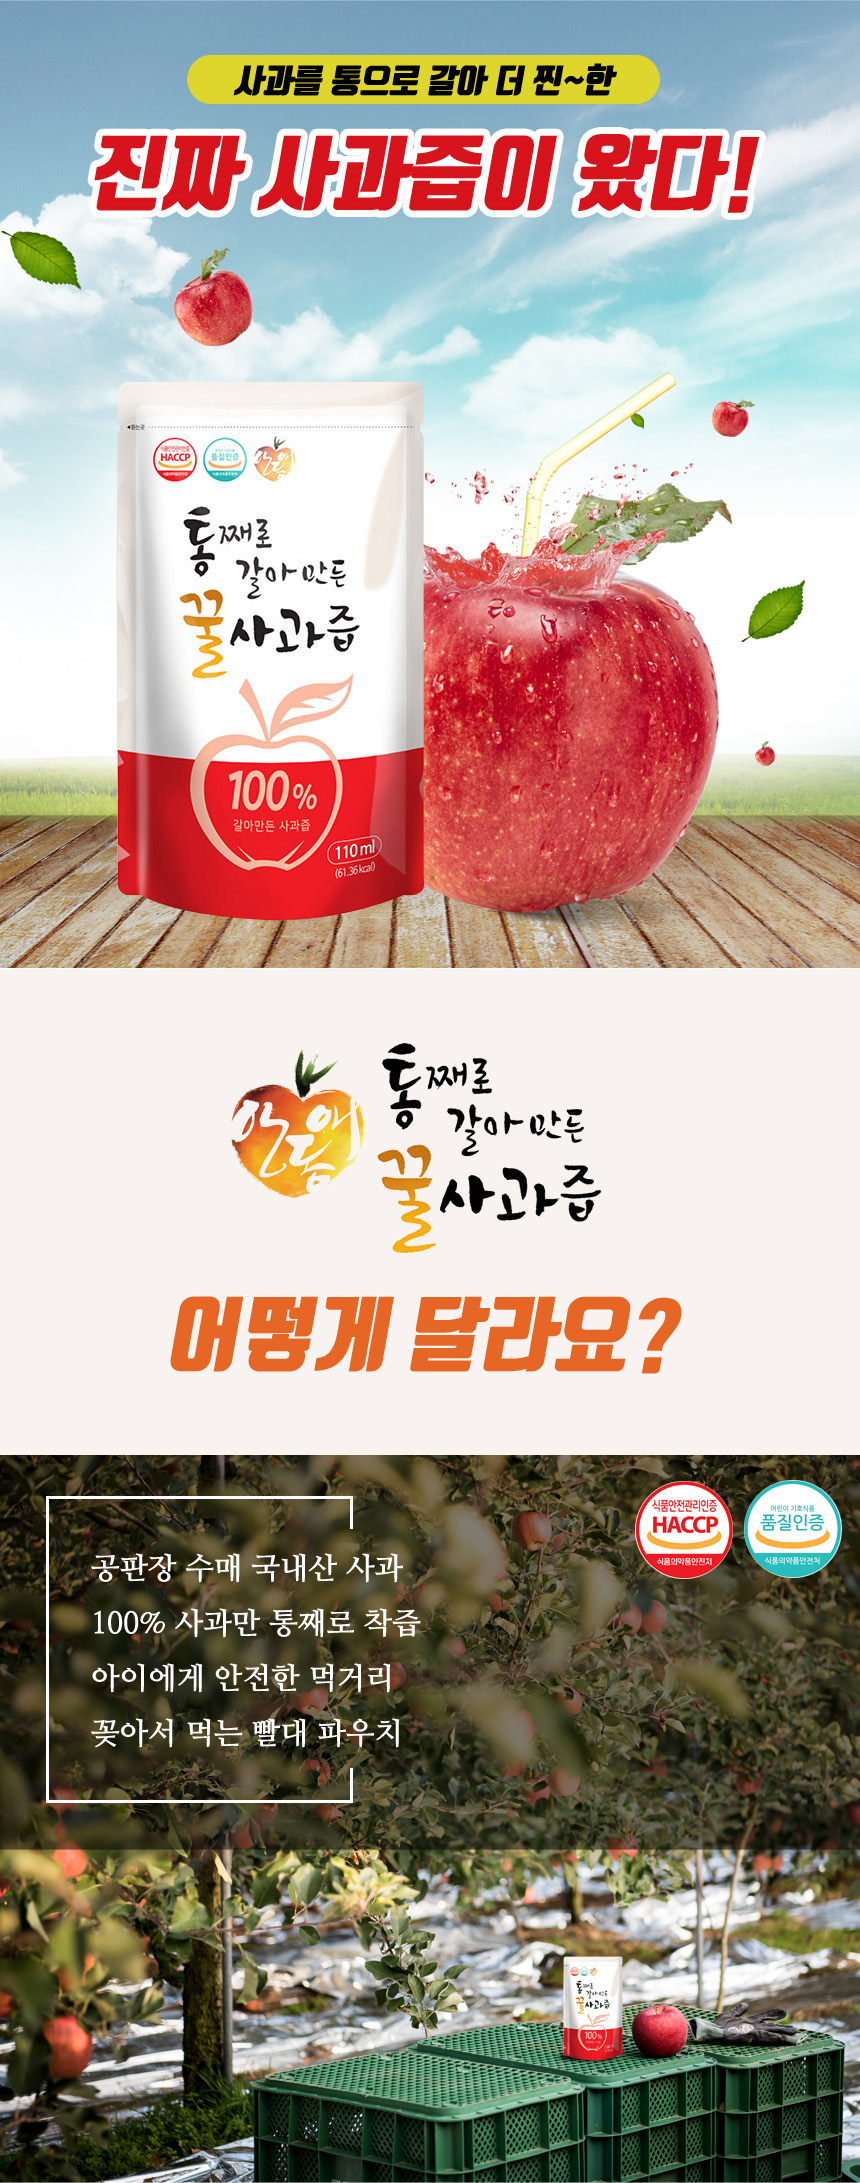 andongae_apple.jpg